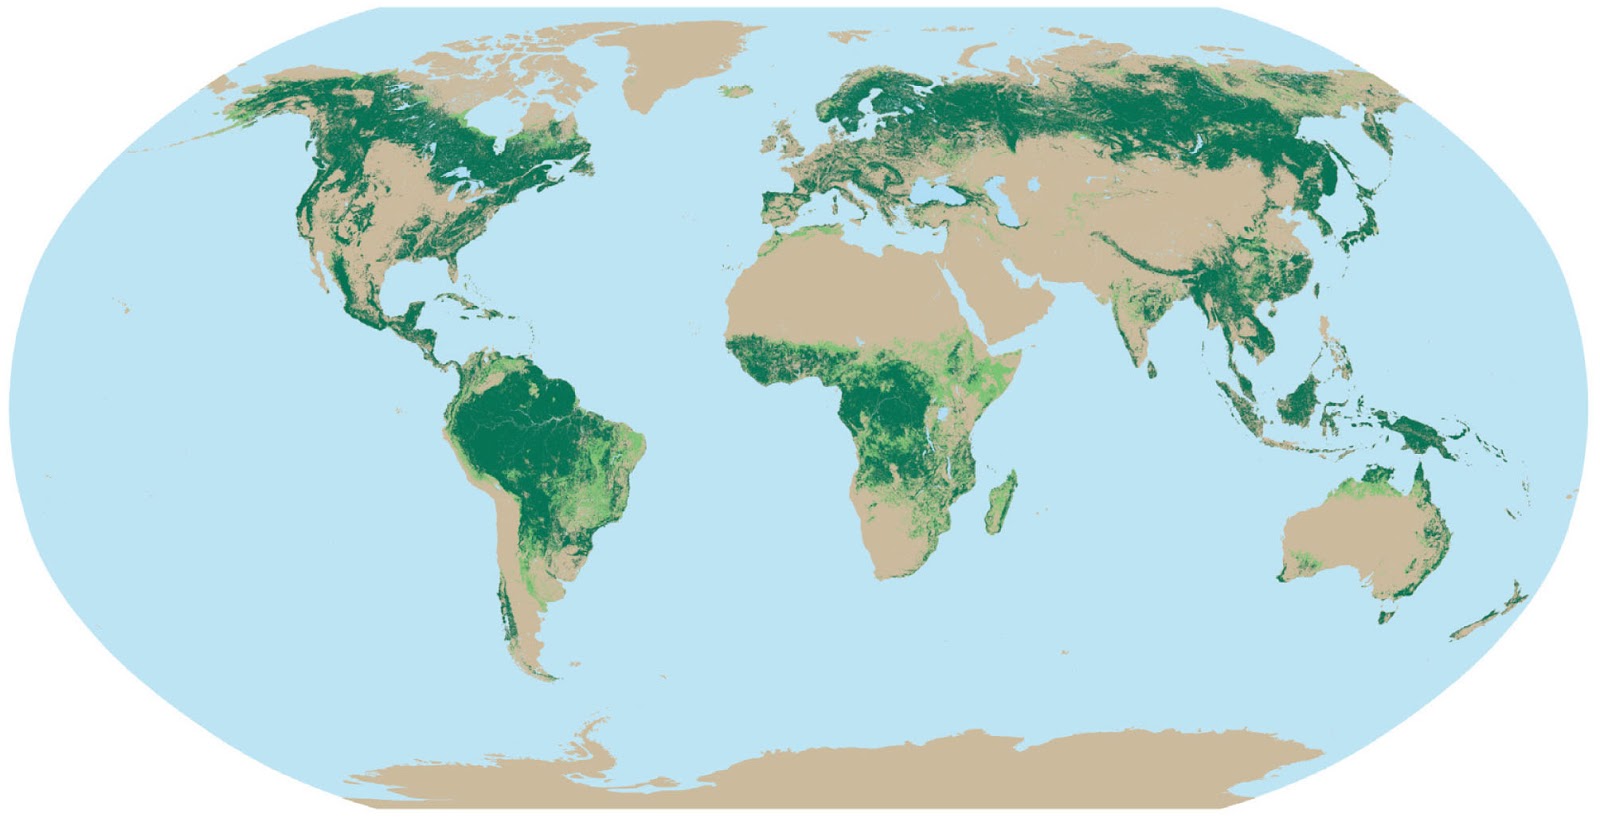 В каких странах есть леса